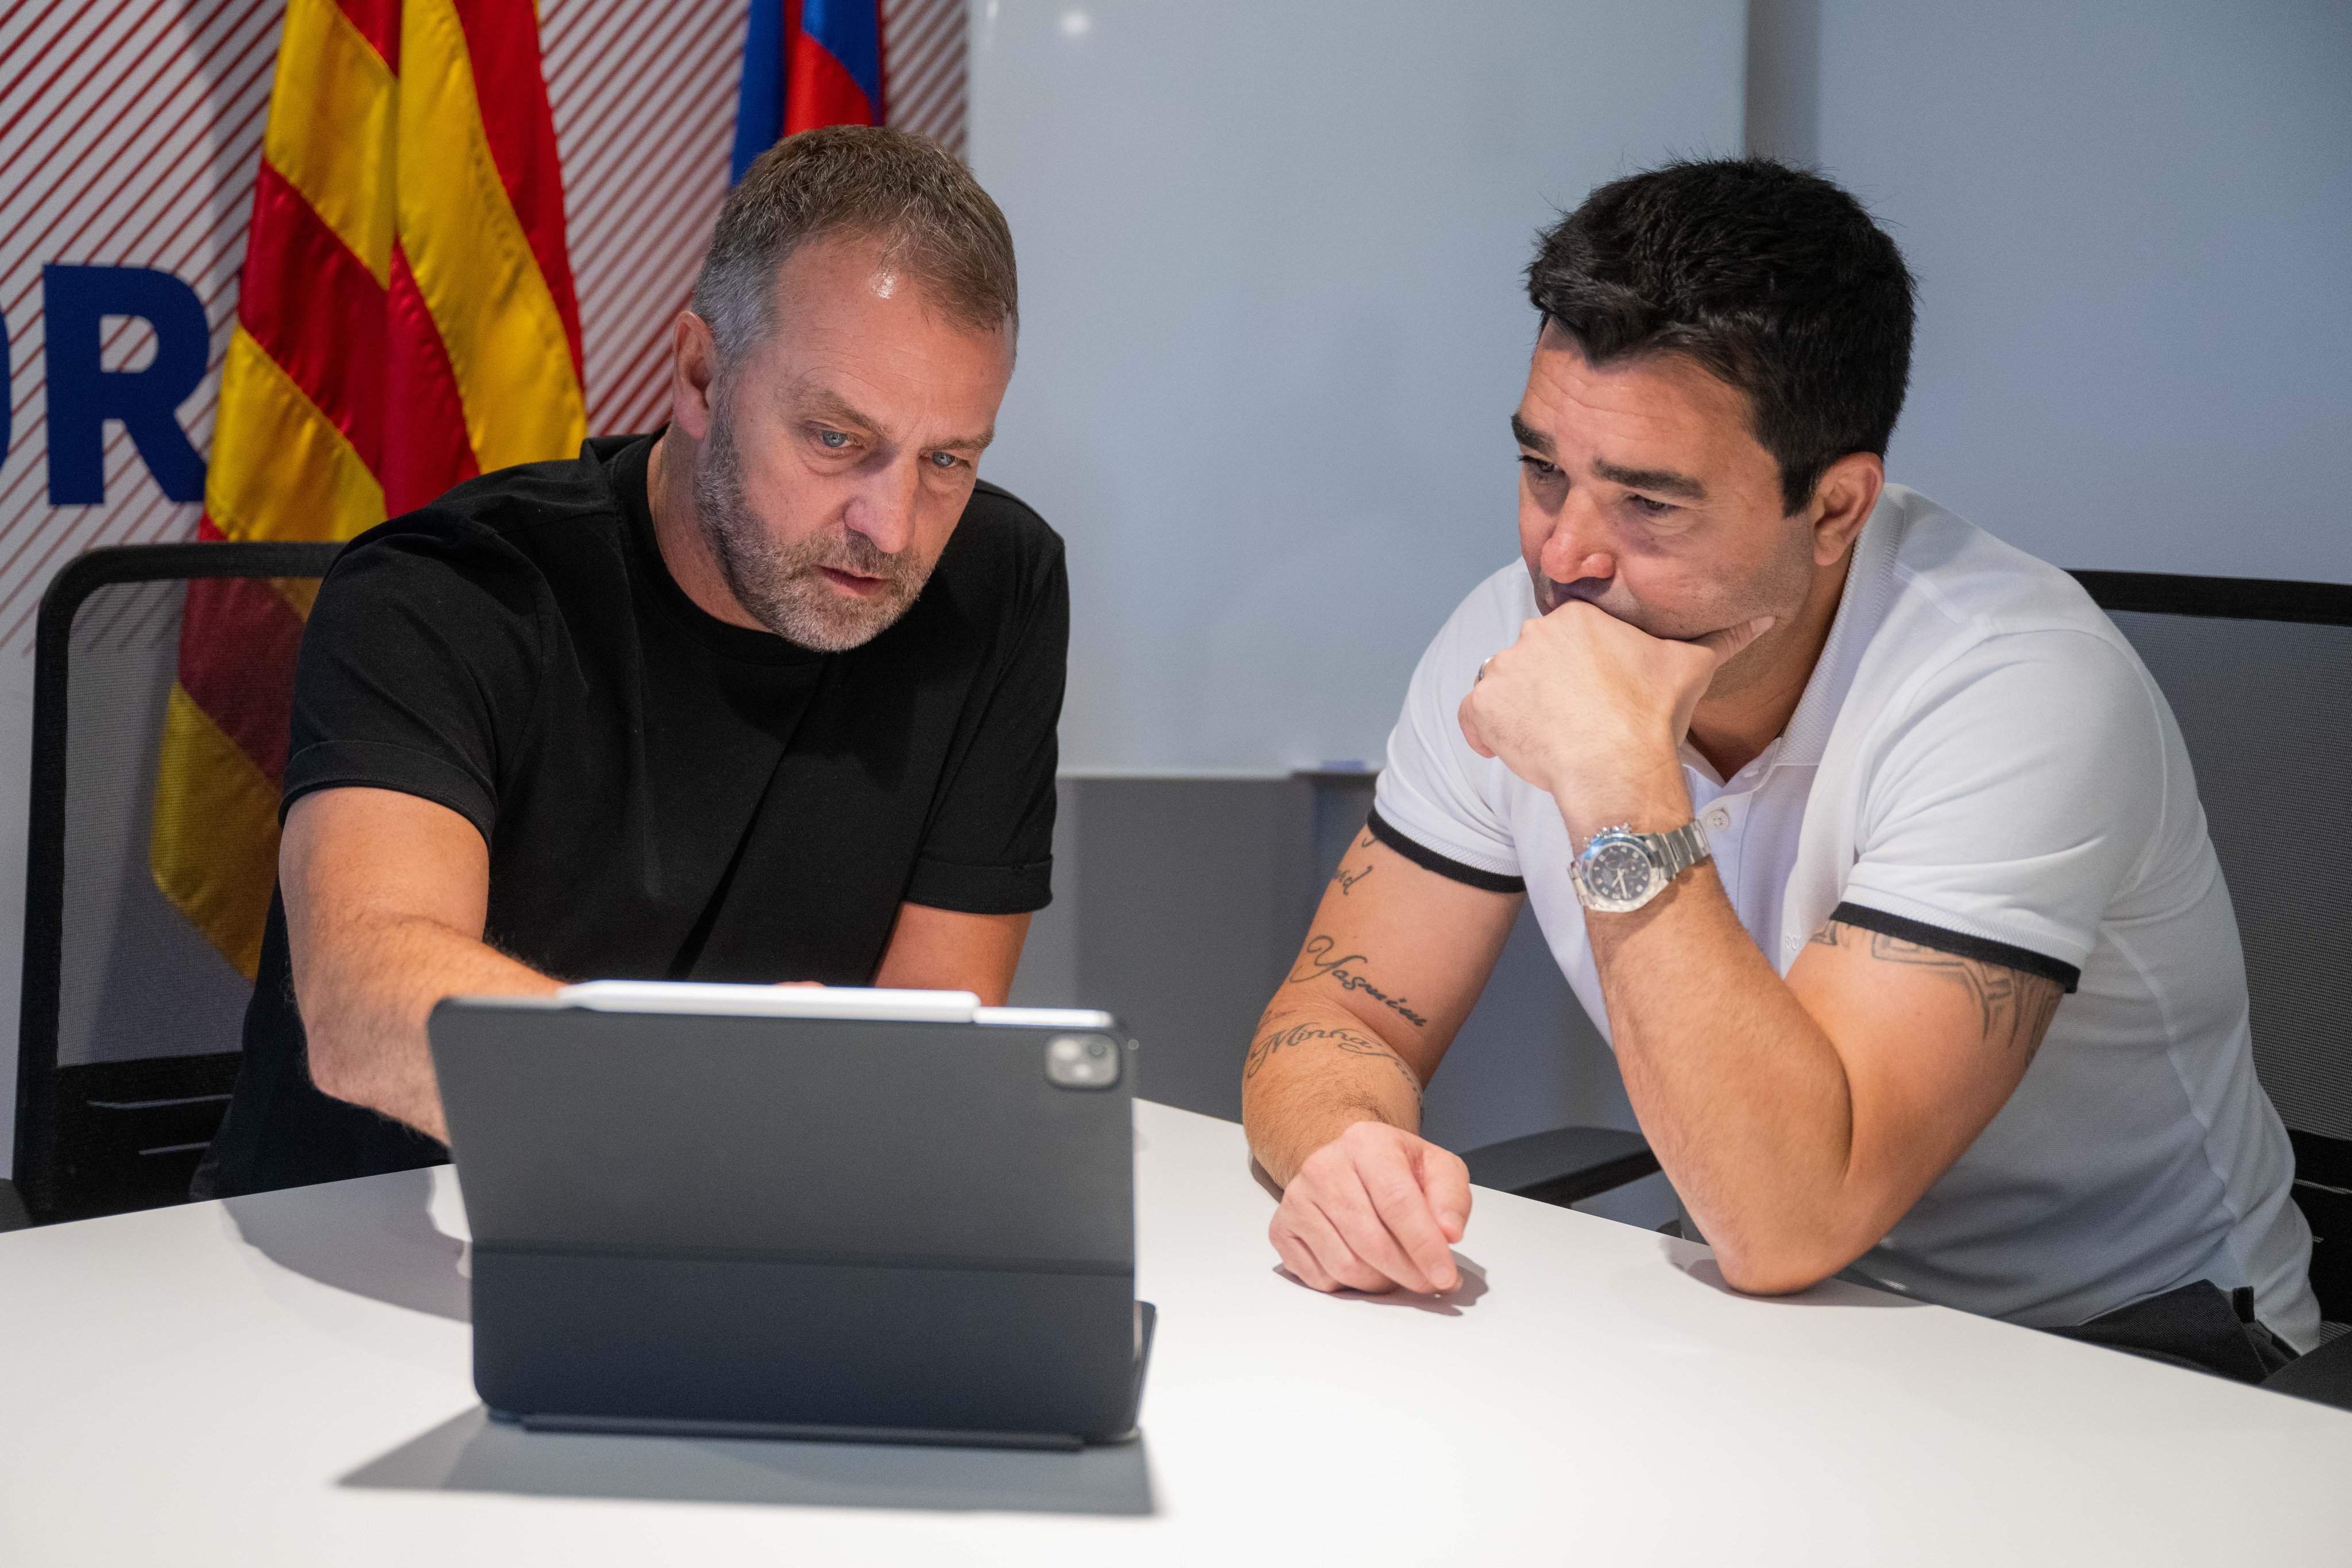 20 milions i intercanvi és l'oferta aprovada per Flick que presenta el Barça